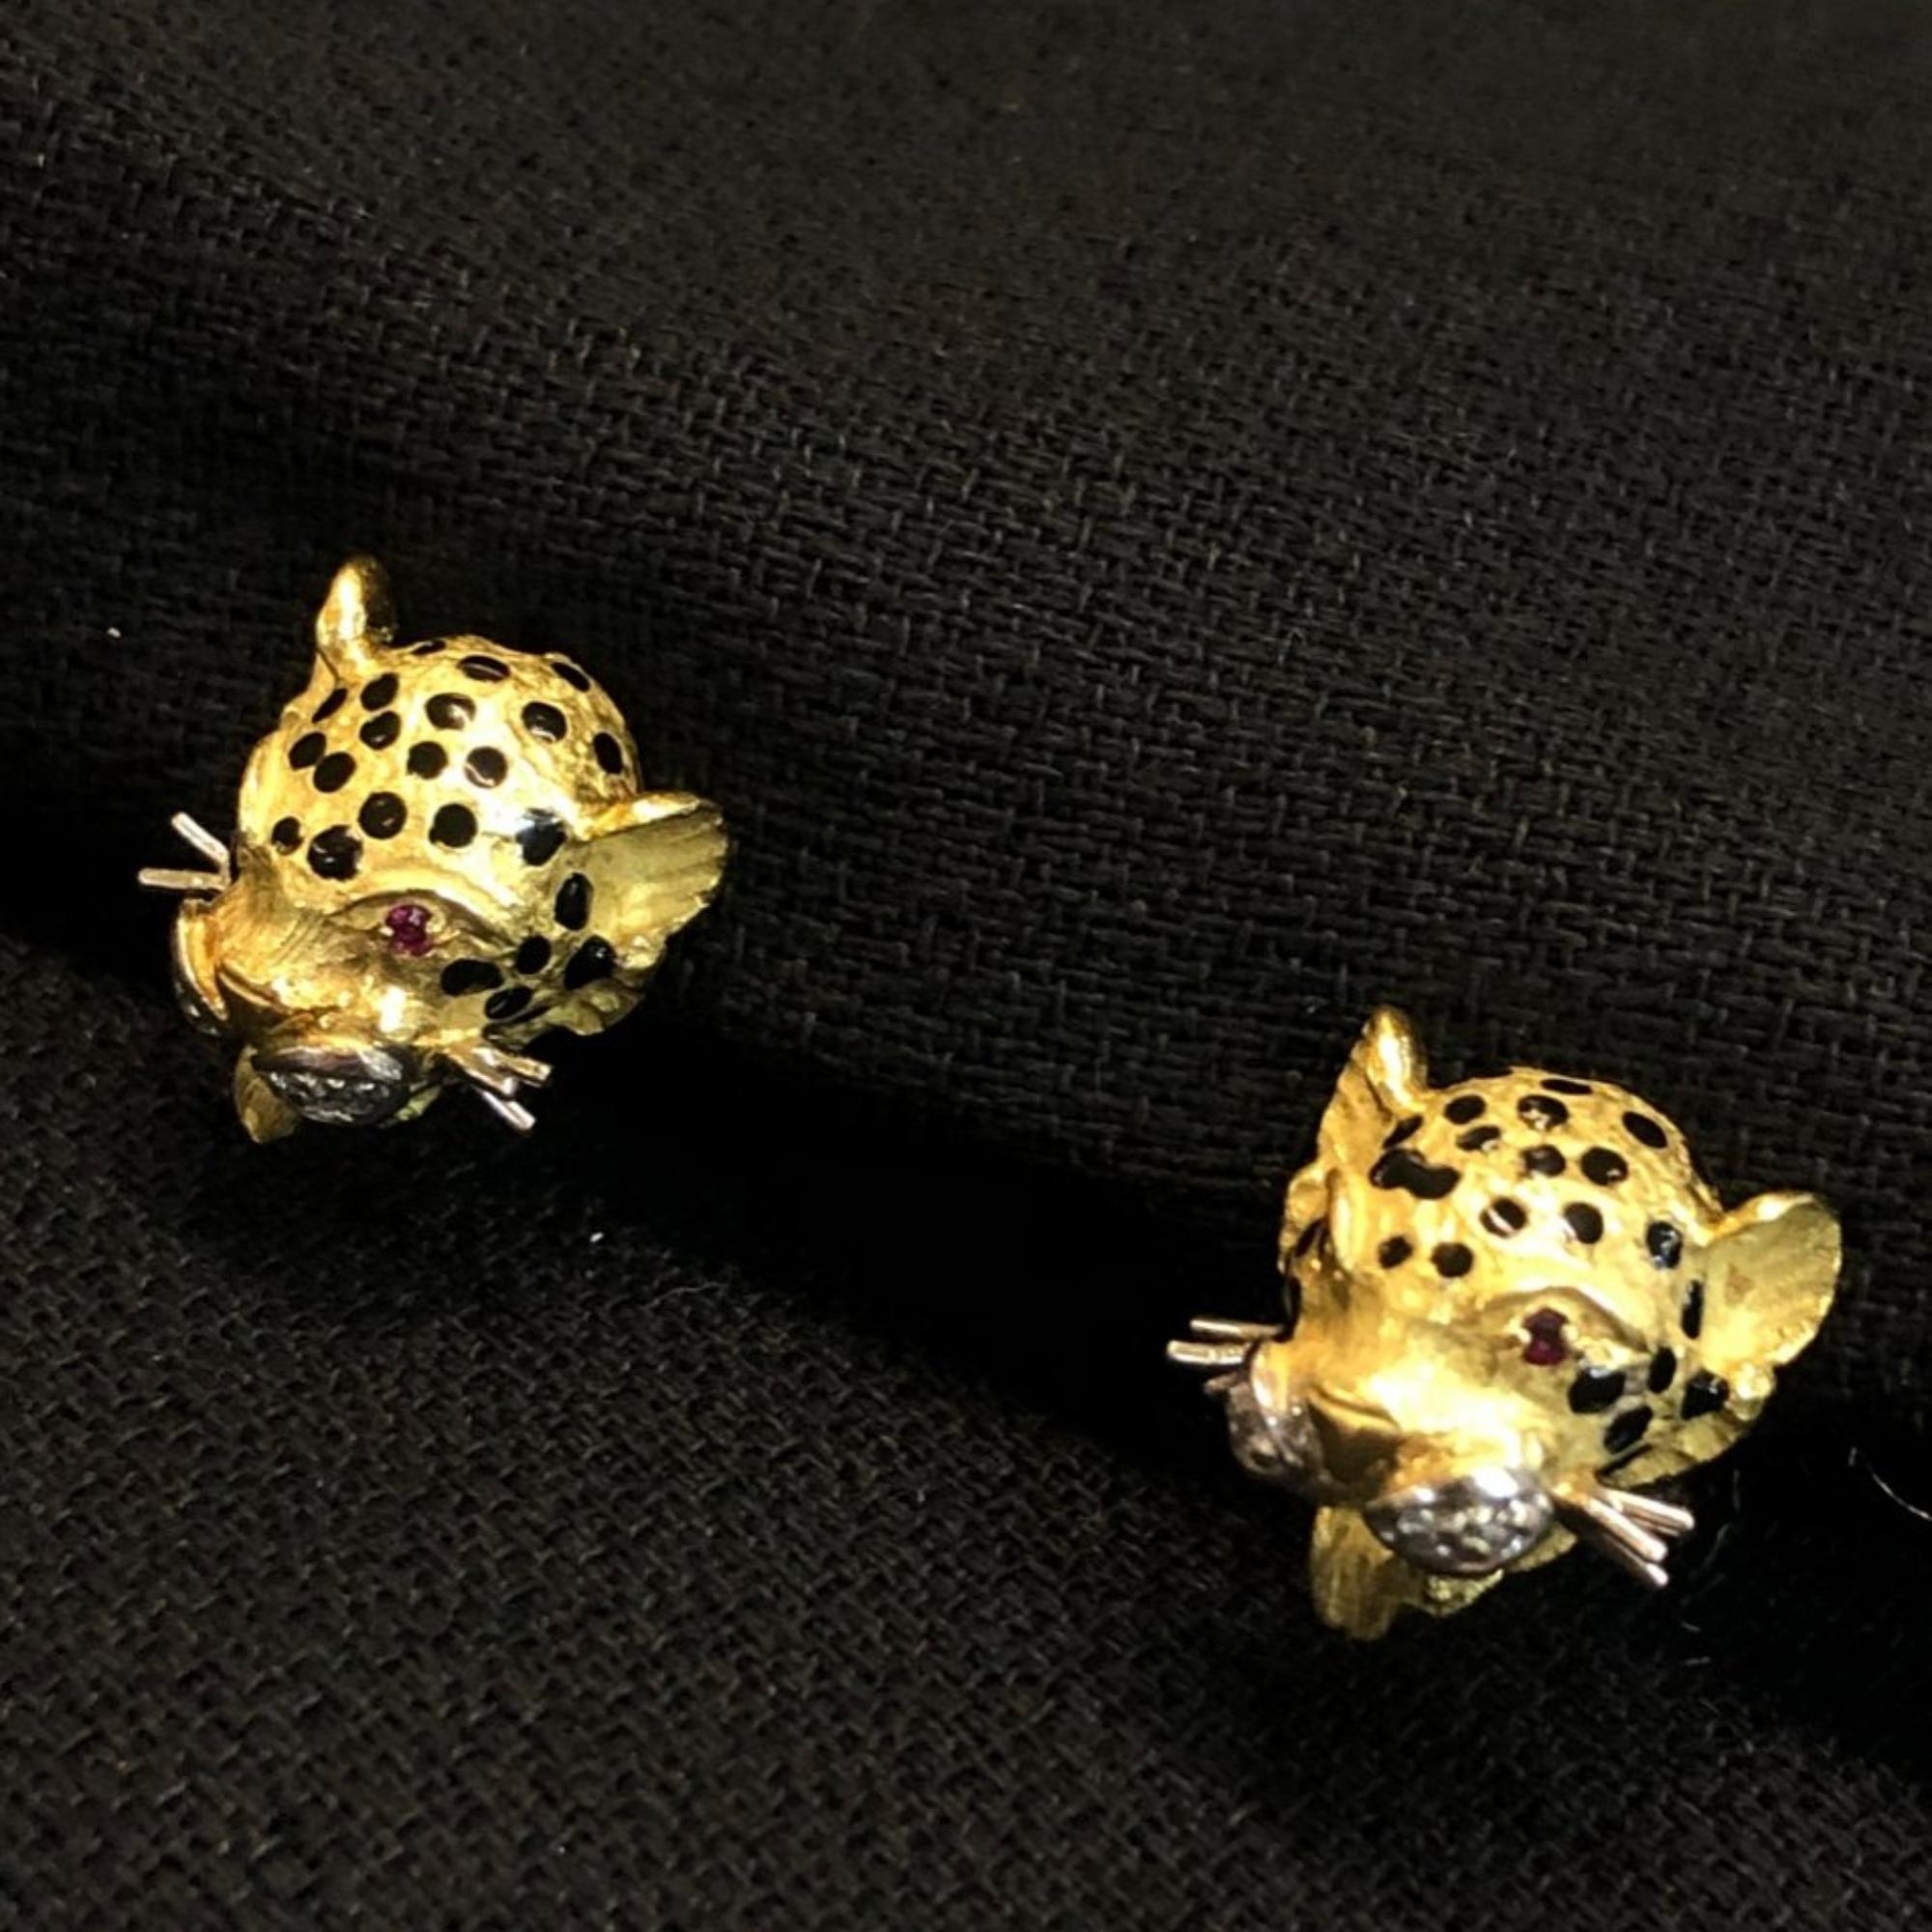 Découvrez l'élégance avec les boucles d'oreilles clip Léopards. Confectionnées en or jaune 18 carats elles sont ornées de diamants et rubis vibrants, ces magnifiques créations captivent par leur allure.

Parfaites pour ajouter une touche de